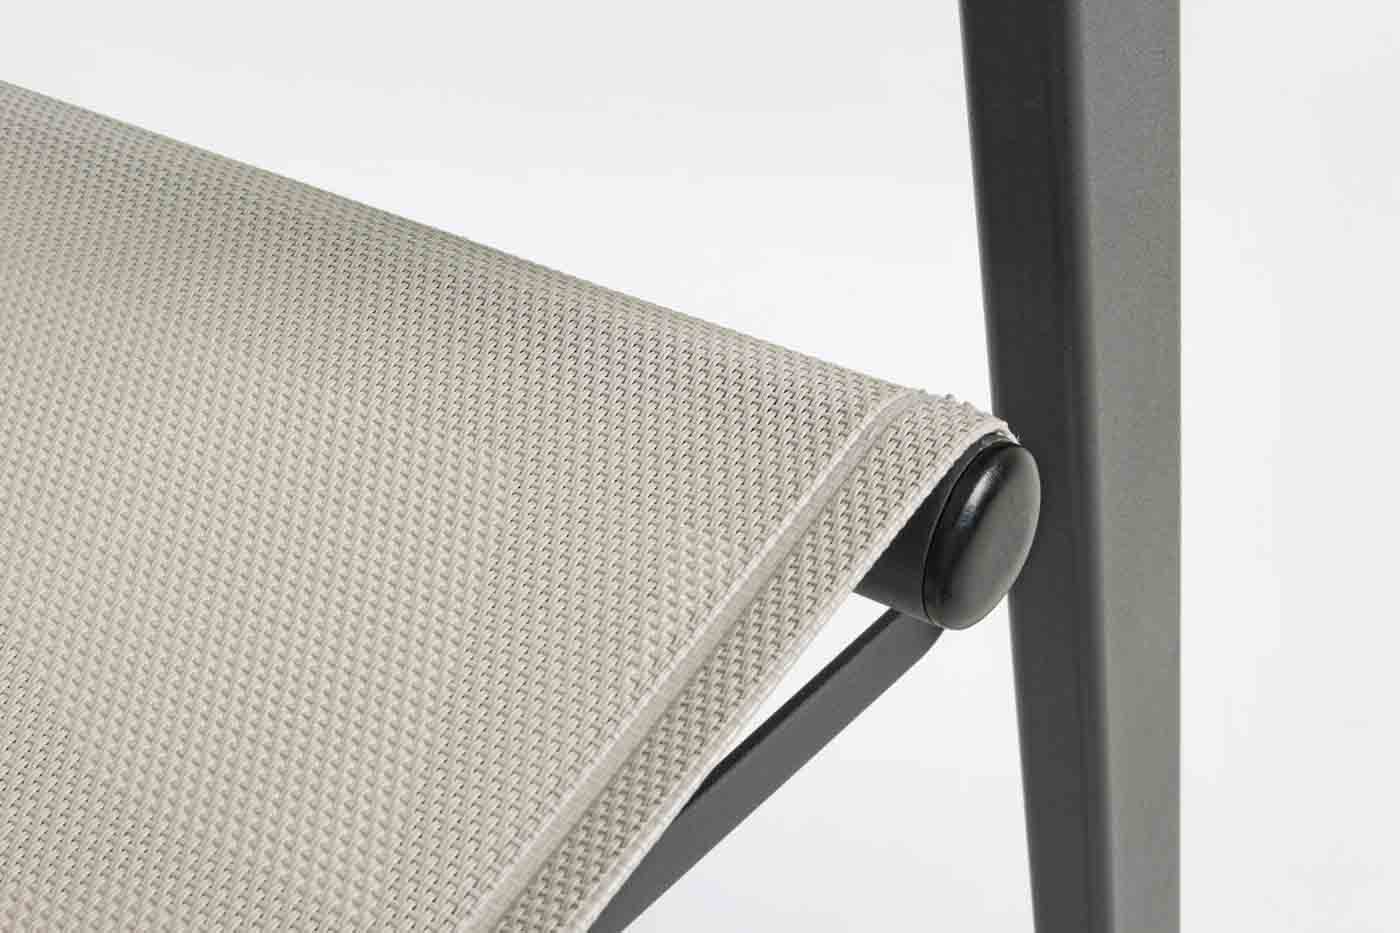 Klappbarer Regiestuhl aus Aluminium mit hochwertigem Textilenebezug für hohen Sitzkomfort.